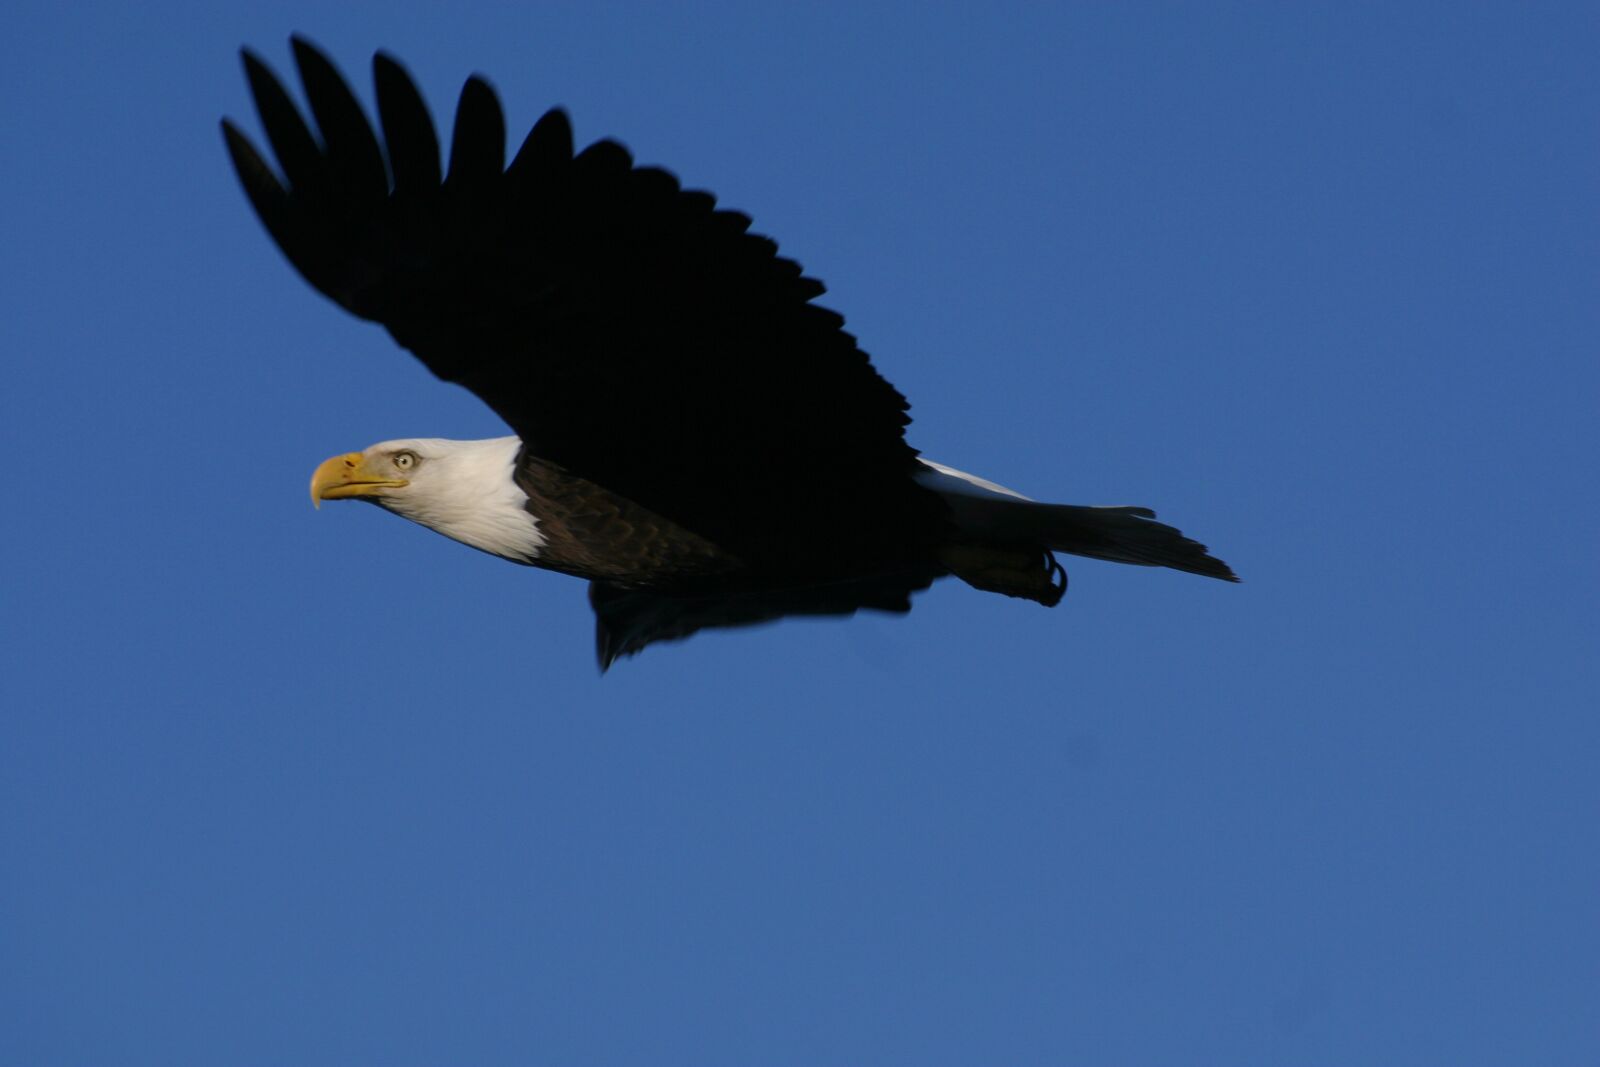 Canon EOS D60 sample photo. Eagle, bald eagle, bird photography